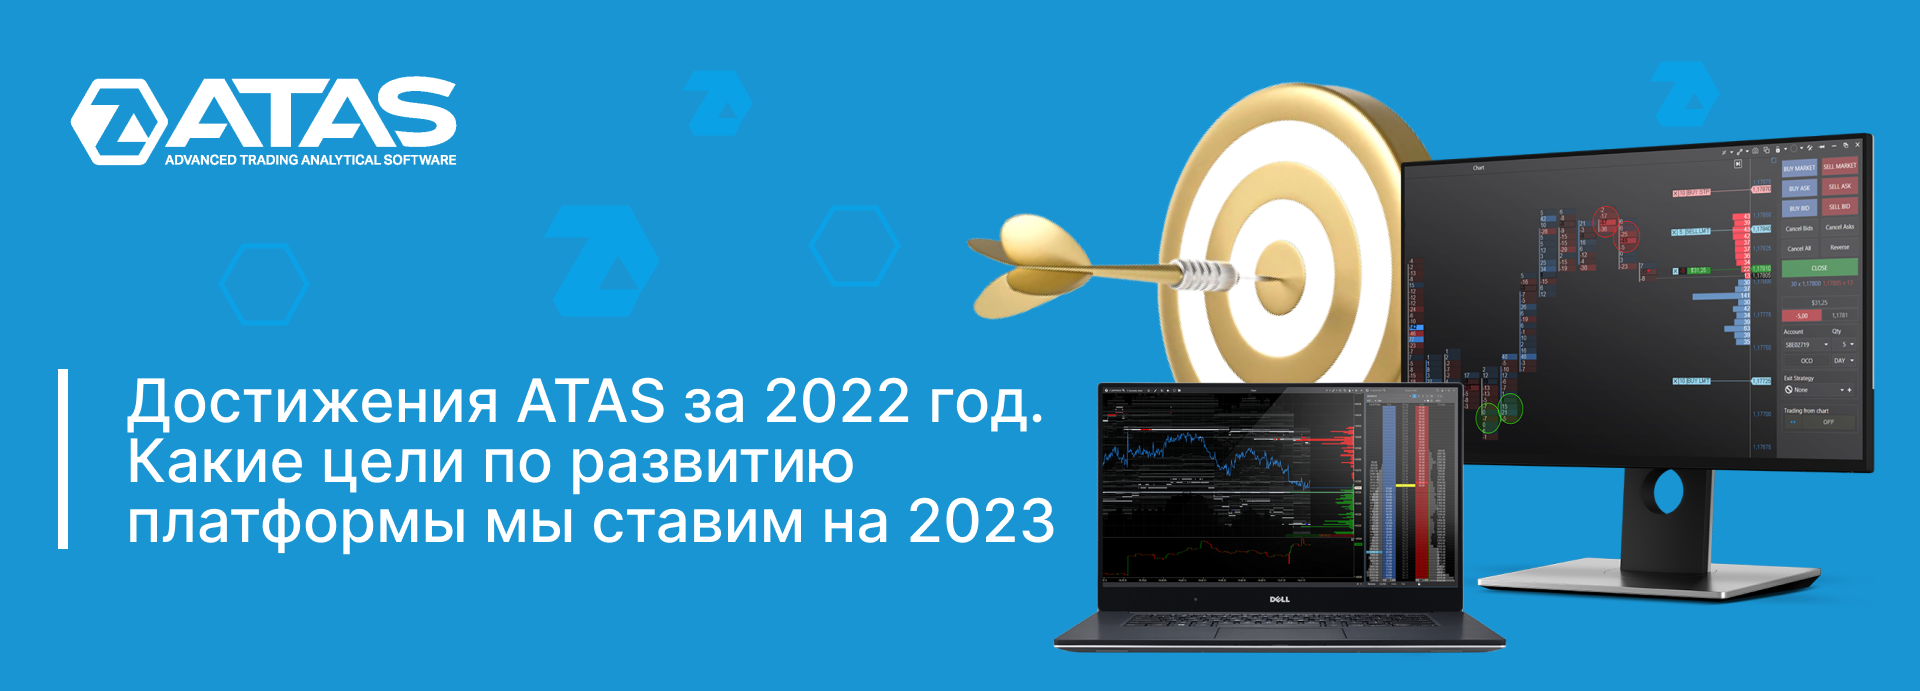 Достижения ATAS за 2022. Самые ожидаемые обновления платформы в 2023.